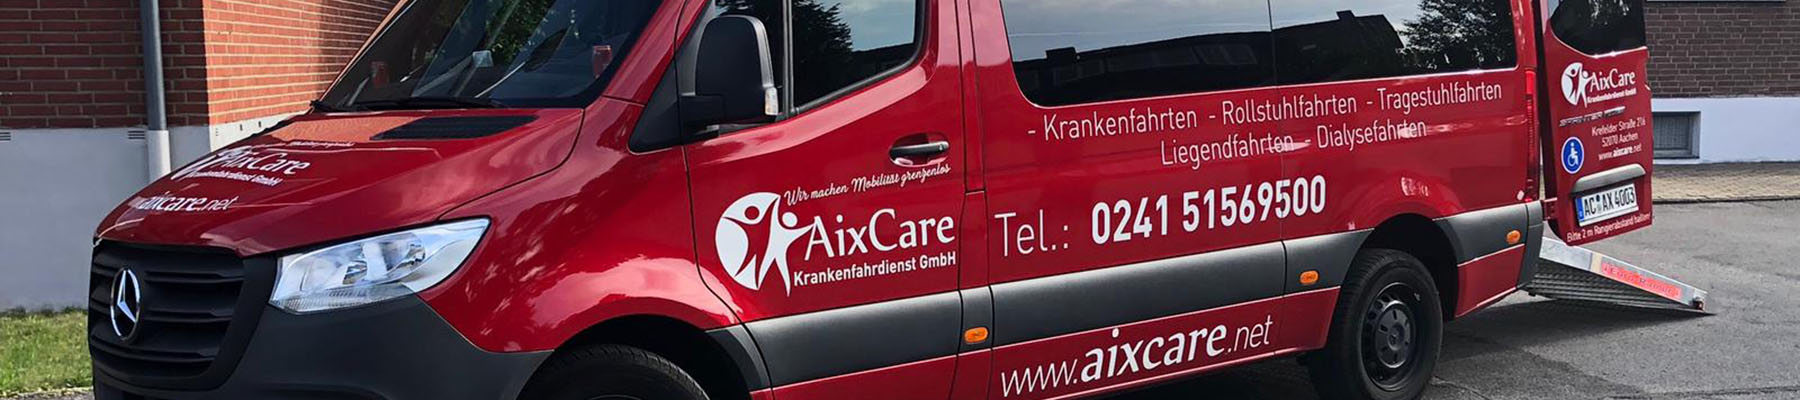 AirCare Krankenfahrdienst GmbH in Aachen - Transporter